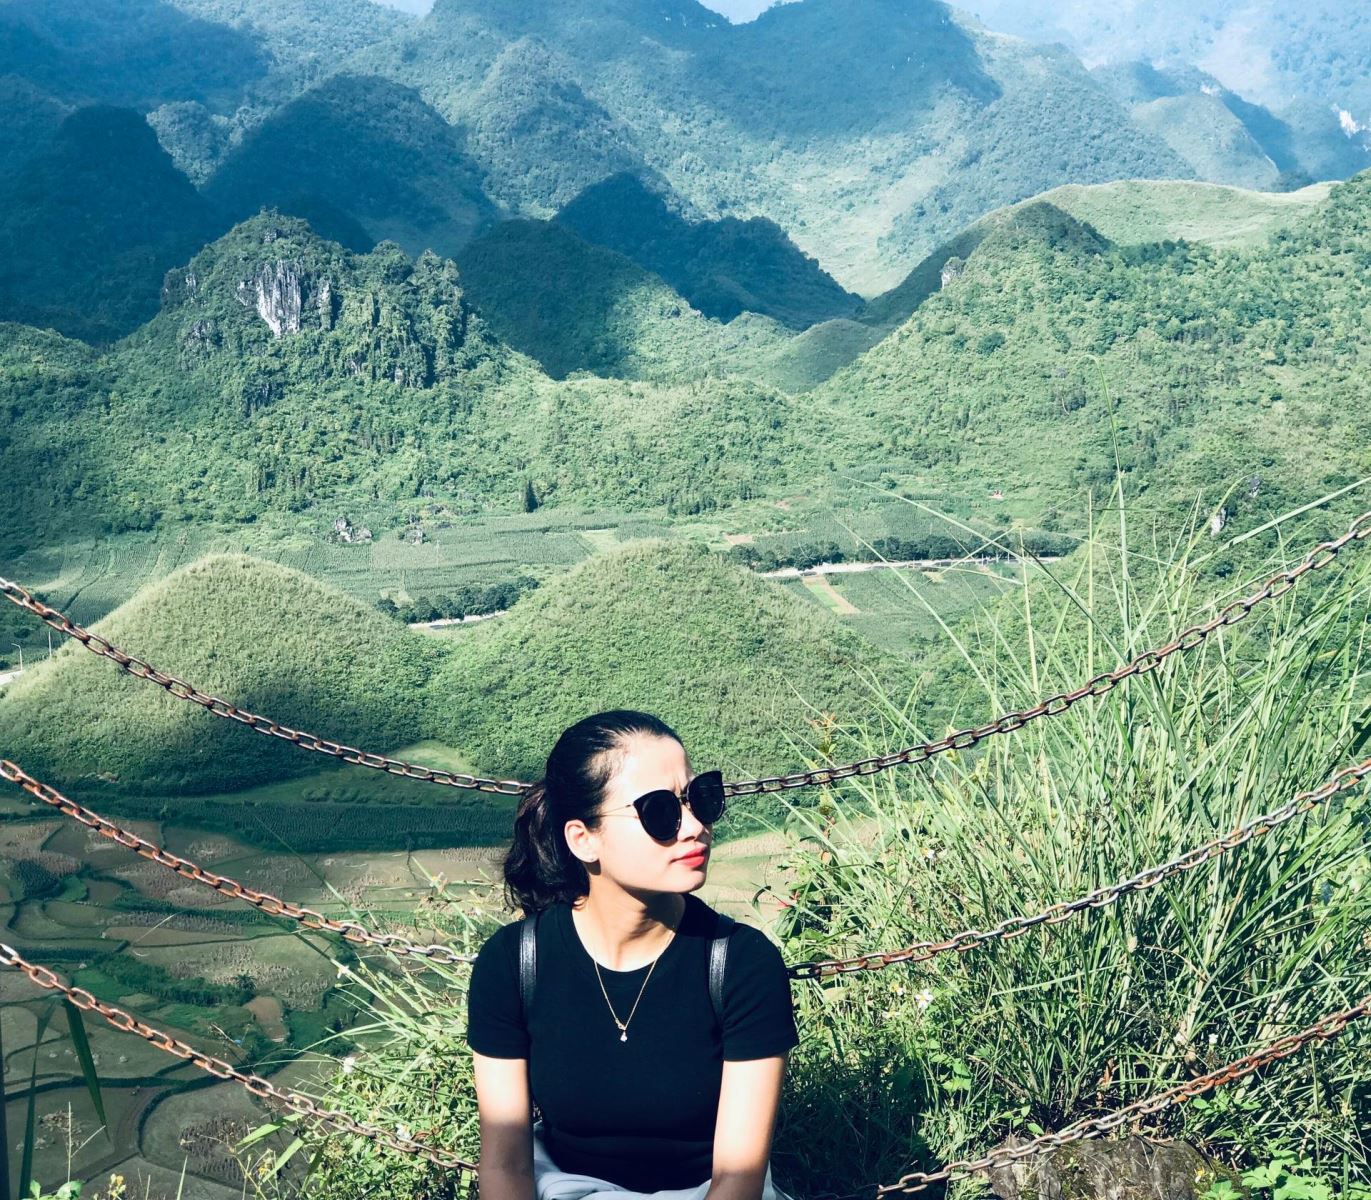 Núi đôi cô Tiên - địa điểm check-in được các lữ khách rất ưa thích khi đến Hà Giang